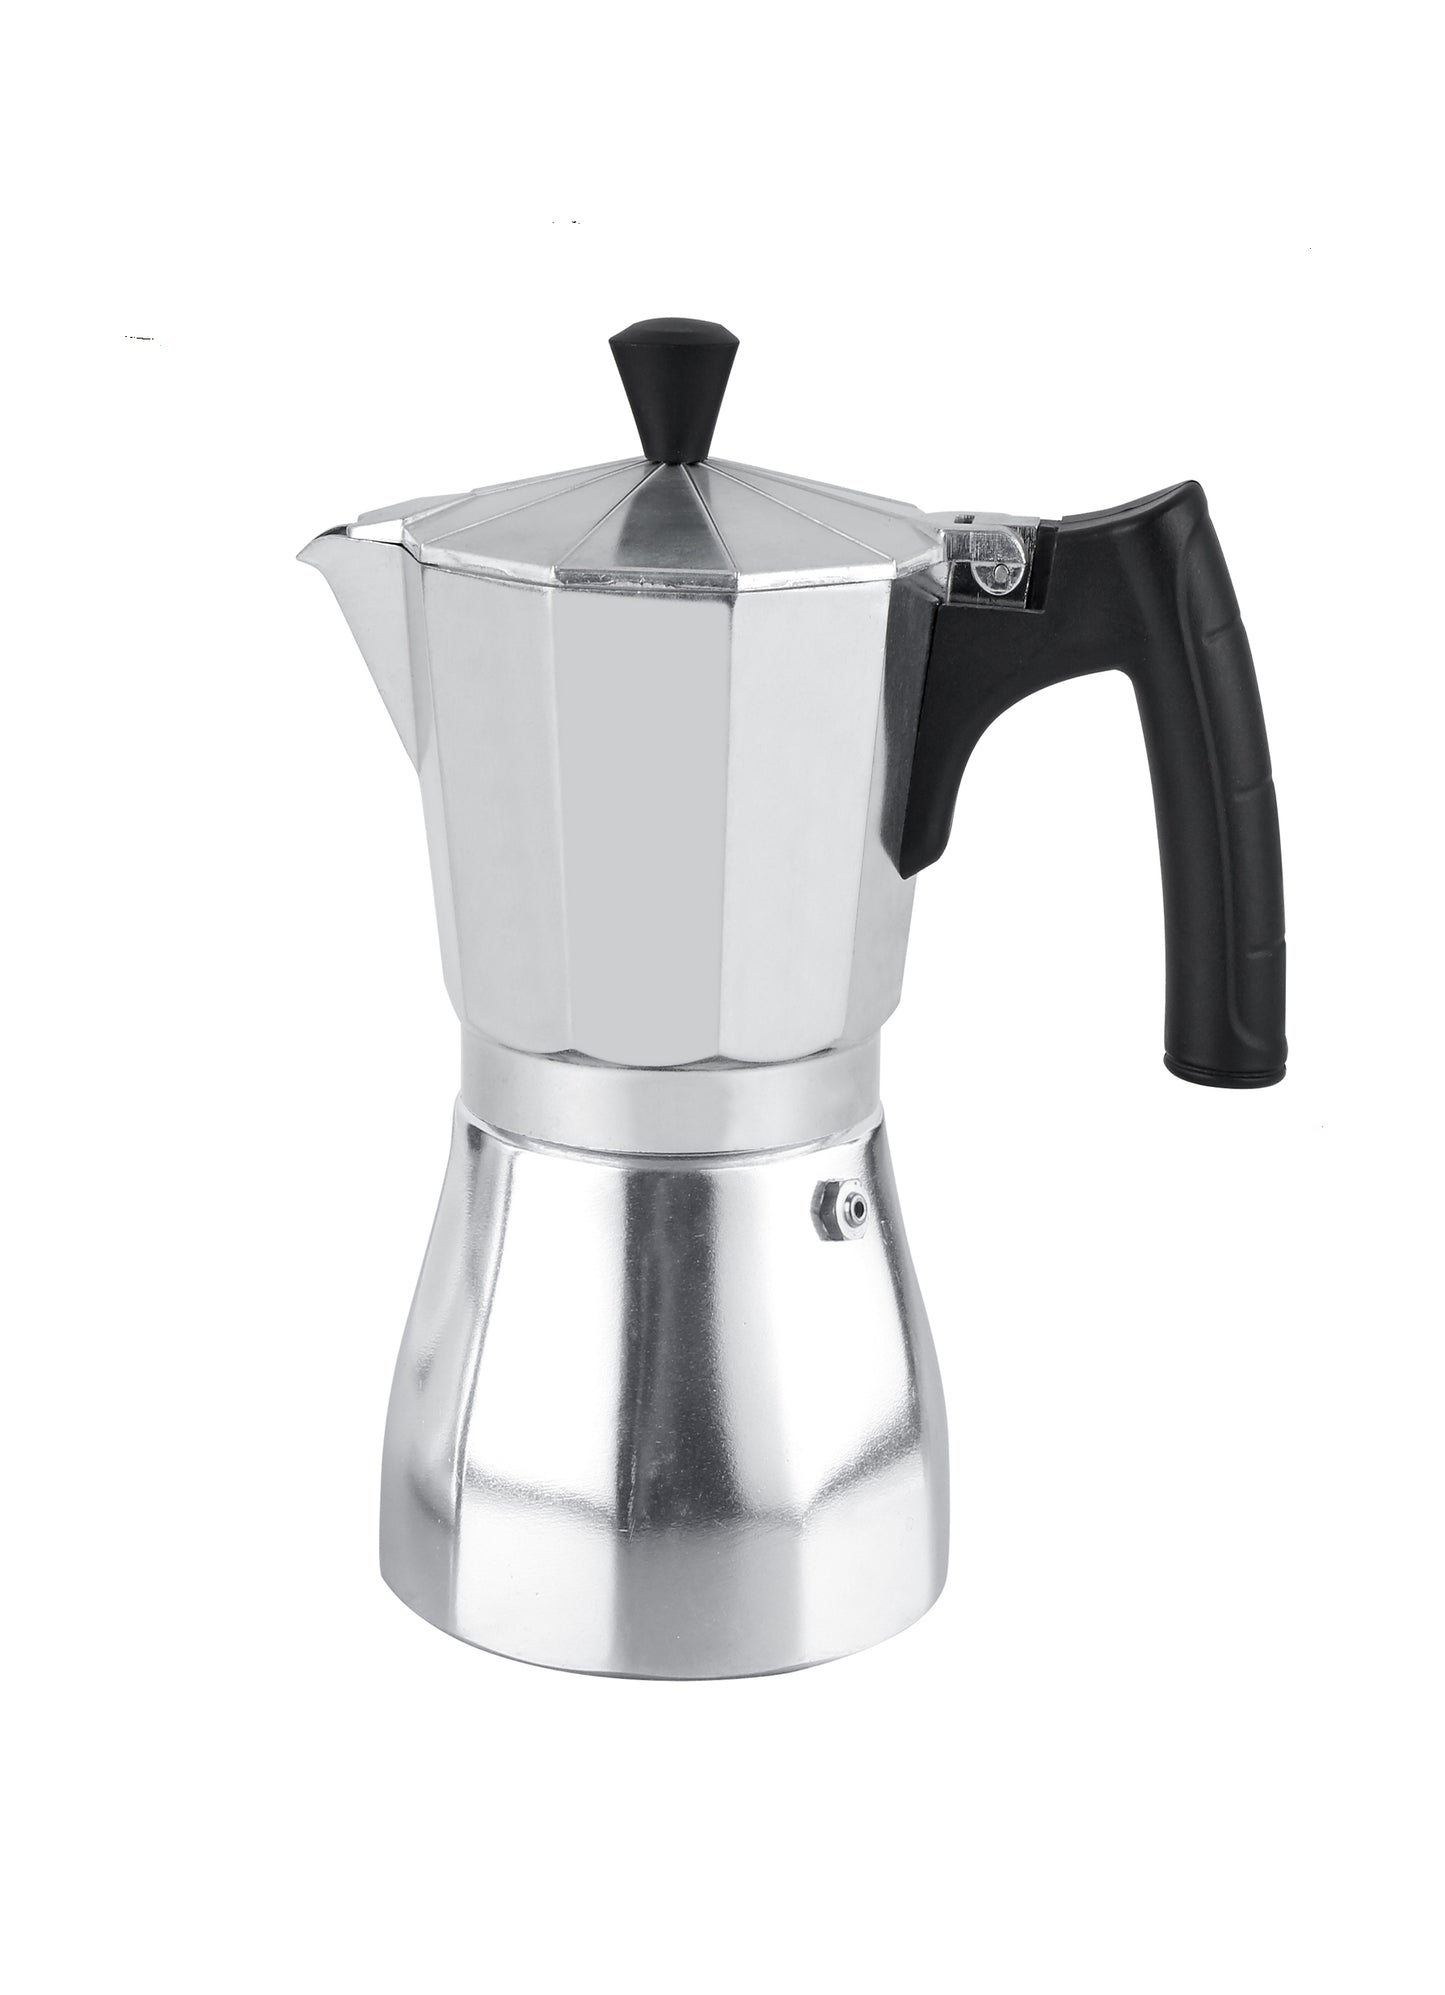 Cuisinox Latte Italian Style Espresso Coffee Maker Moka Espresso Maker, 9 cup